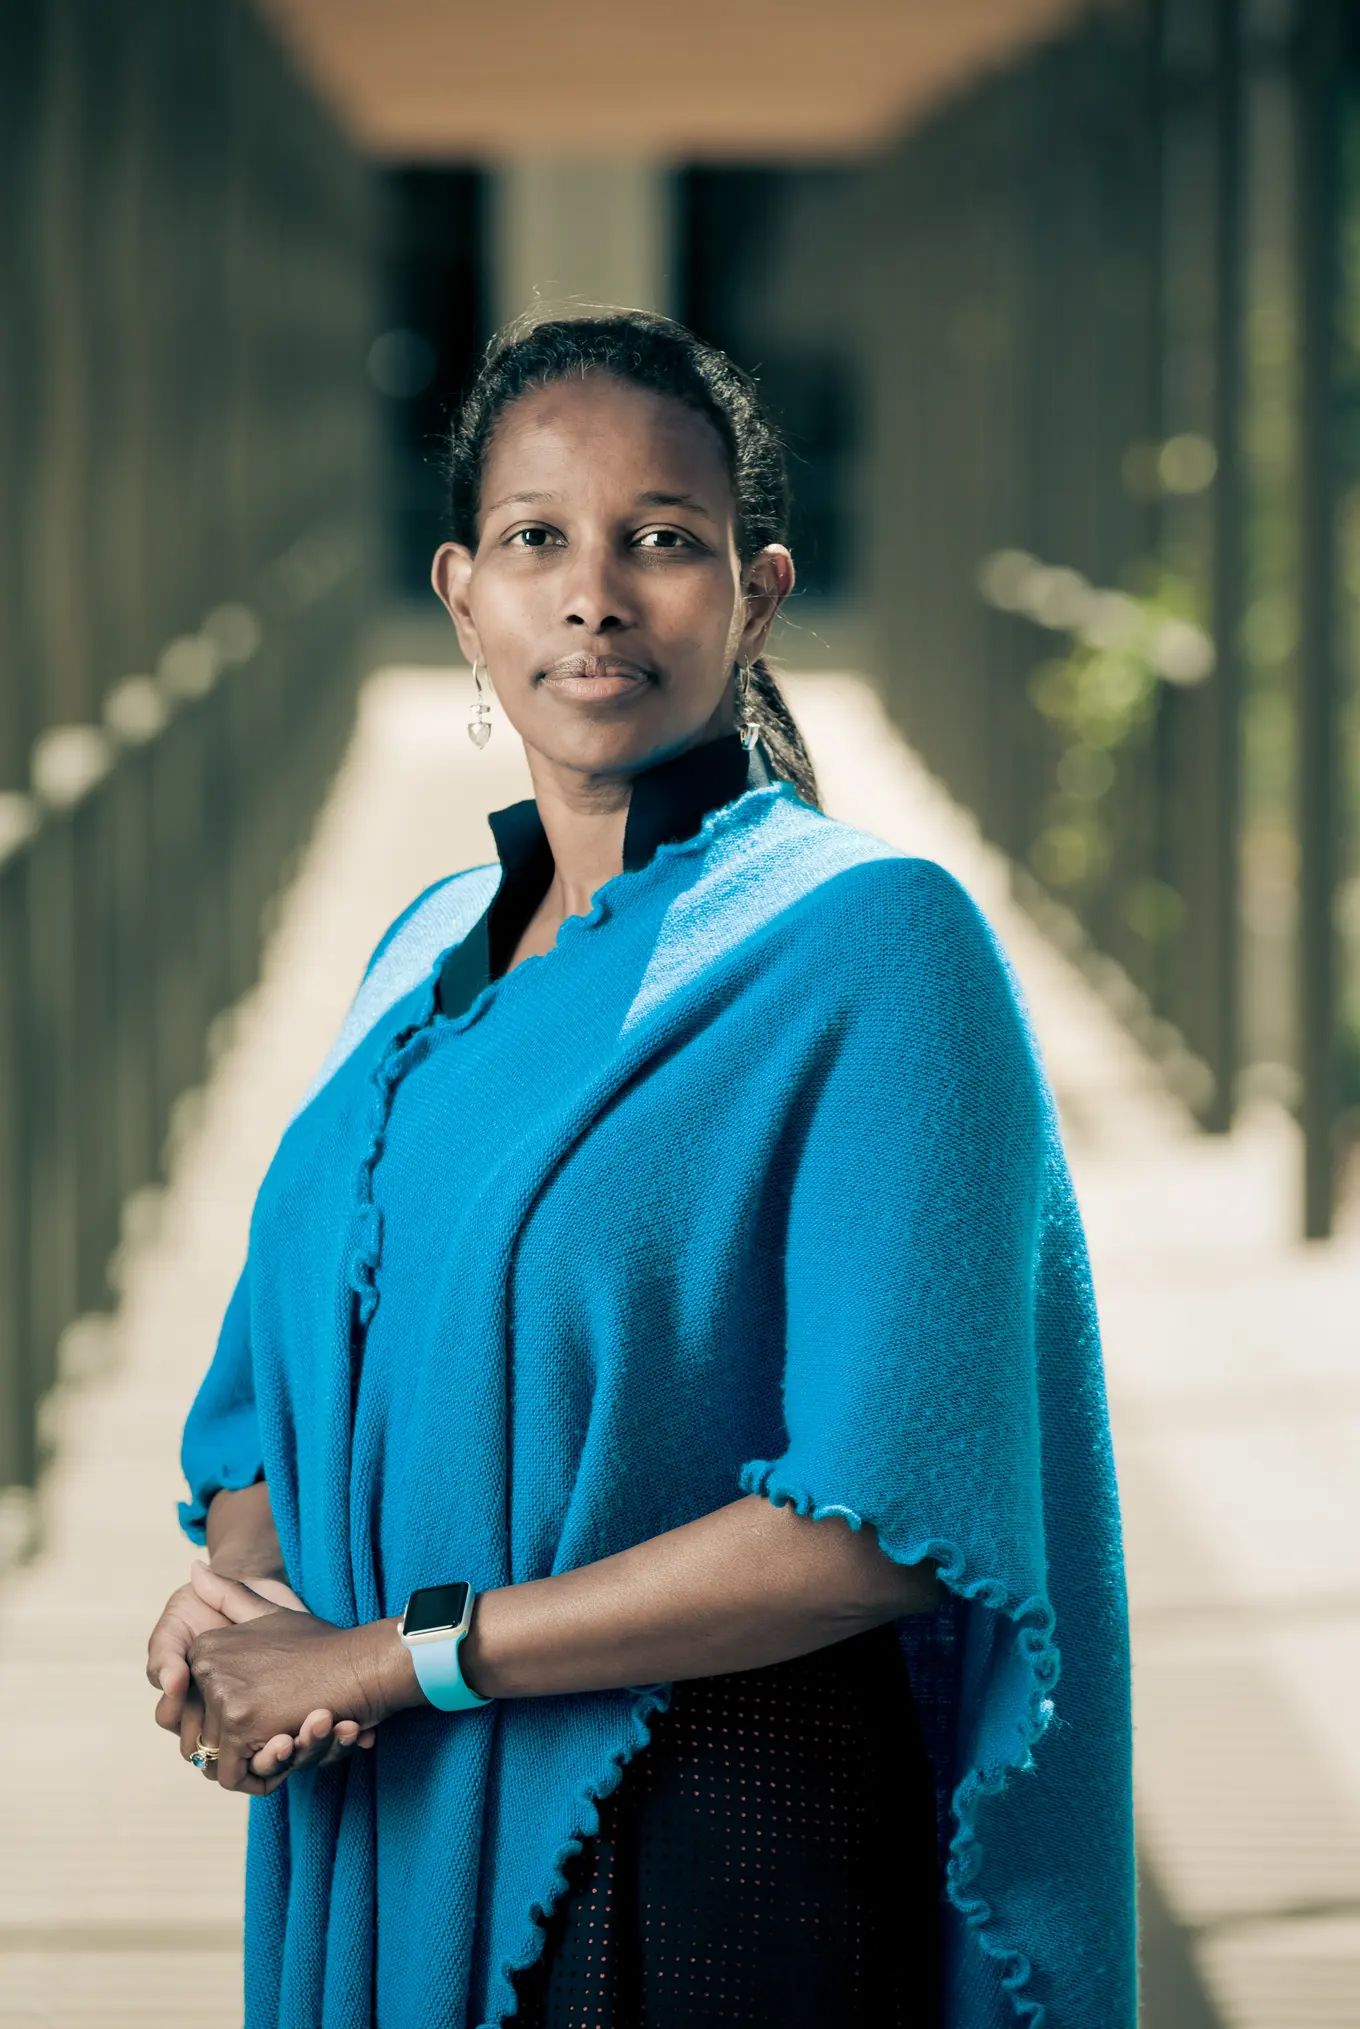 Ayaan Hirsi Ali über Freiheit, Religion und Identitätspolitik